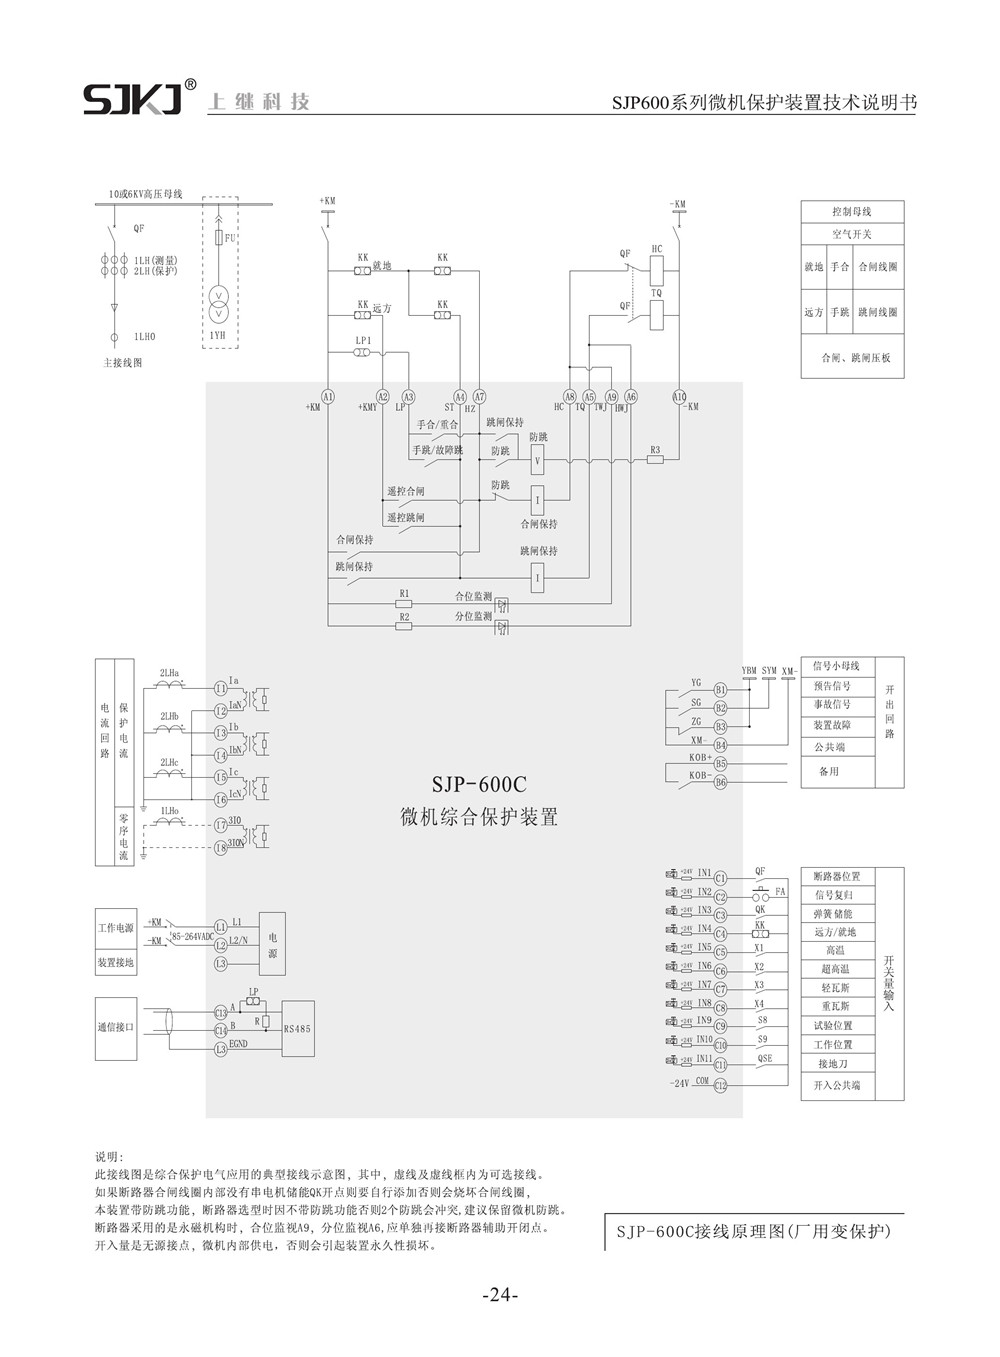 SJP-600C微机综合保护装置产品参数图片三